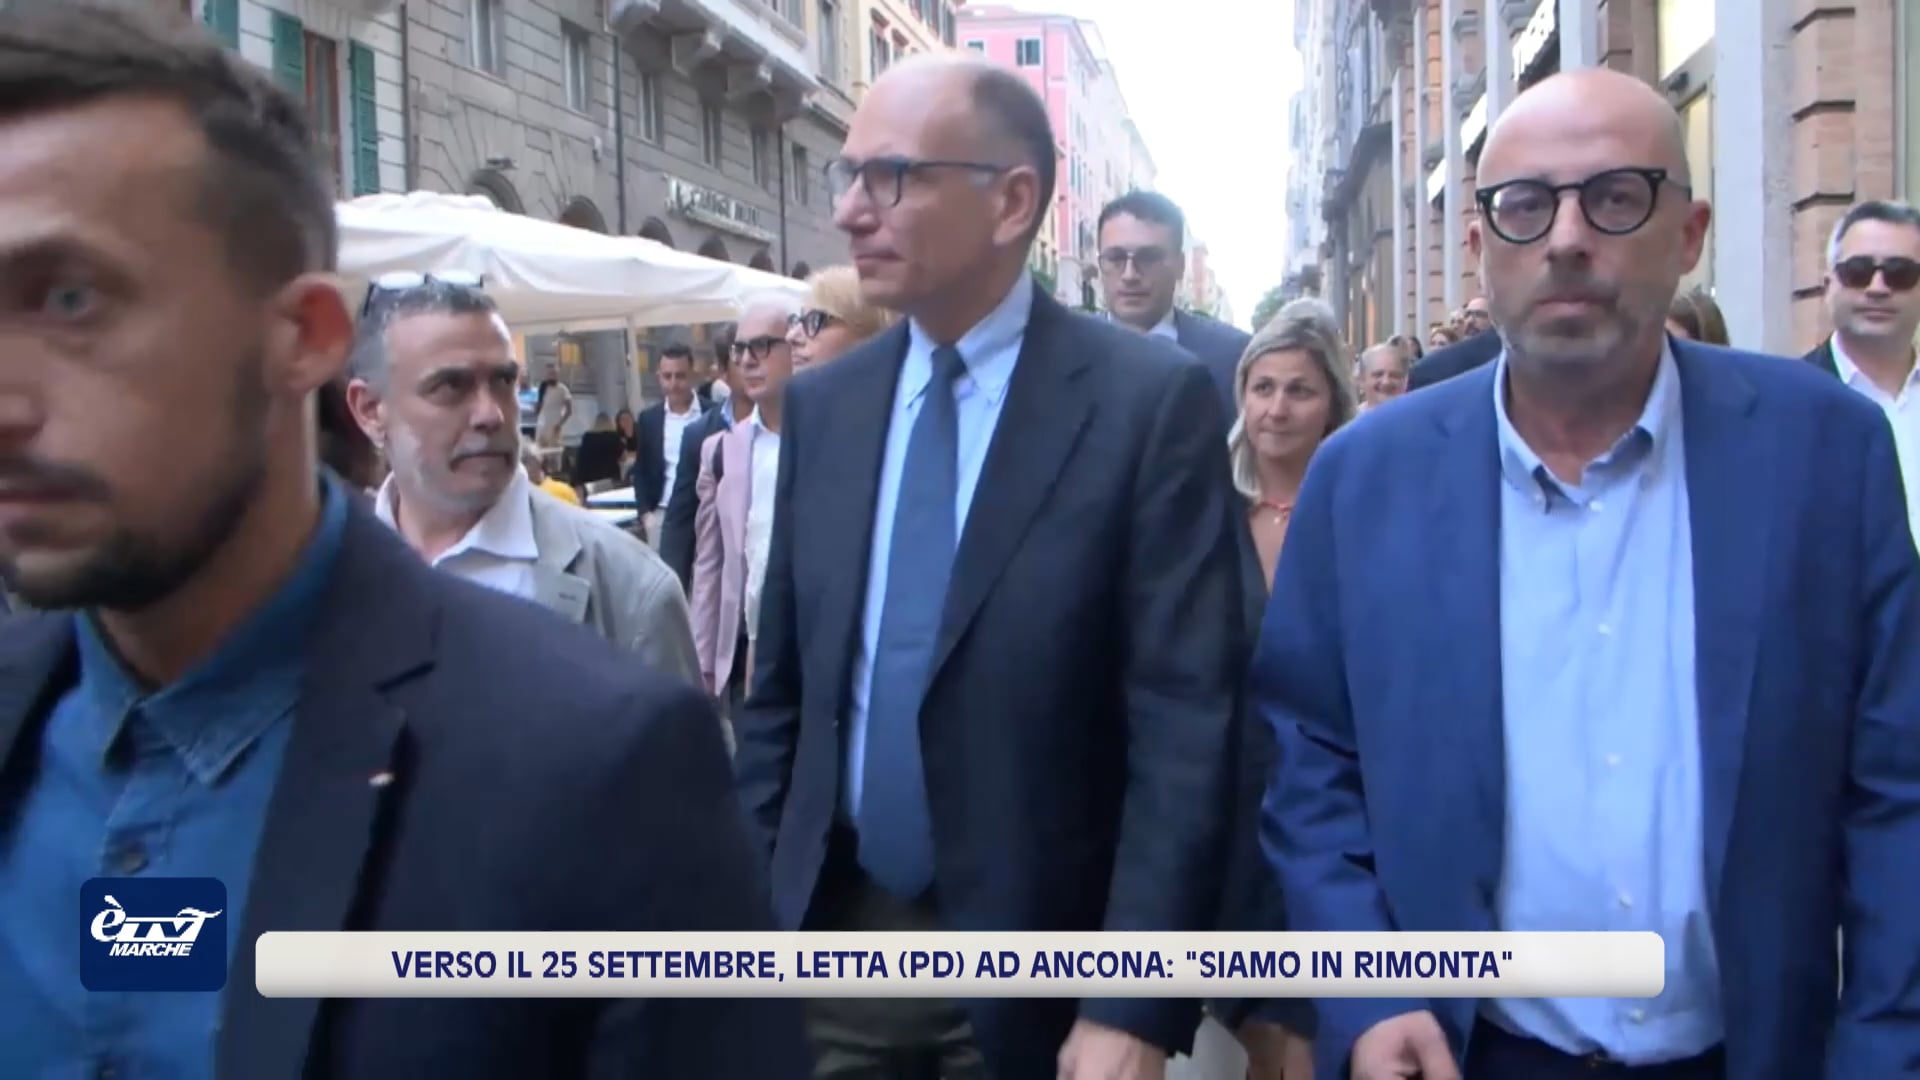 Verso le politiche del 25 settembre, Enrico Letta ad Ancona - VIDEO